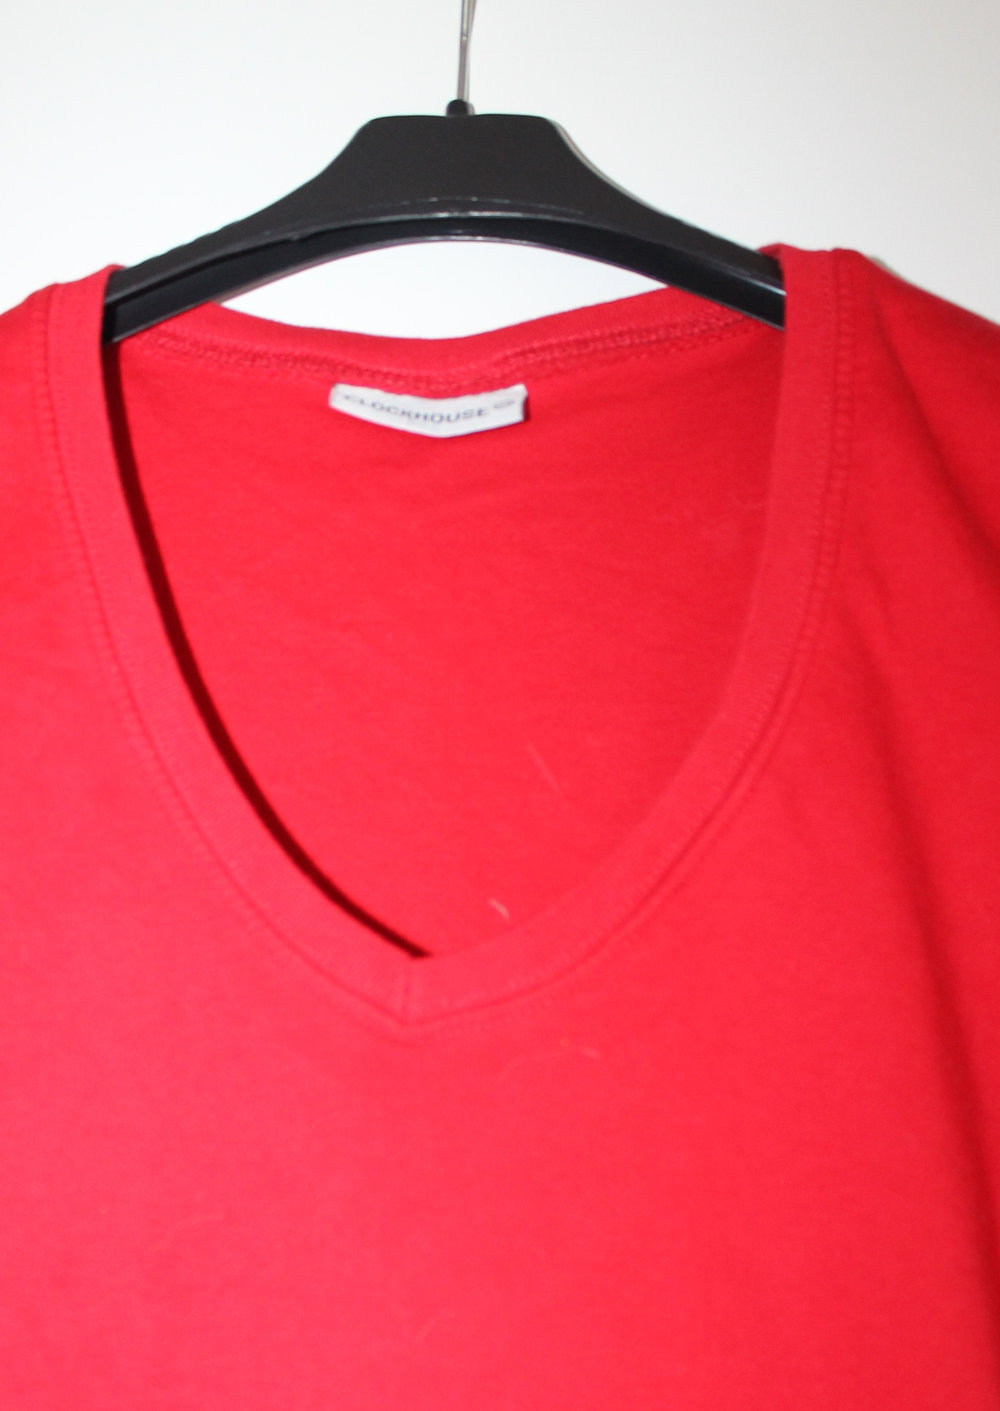 bauchfreies Oberteil / t-shirt in rot